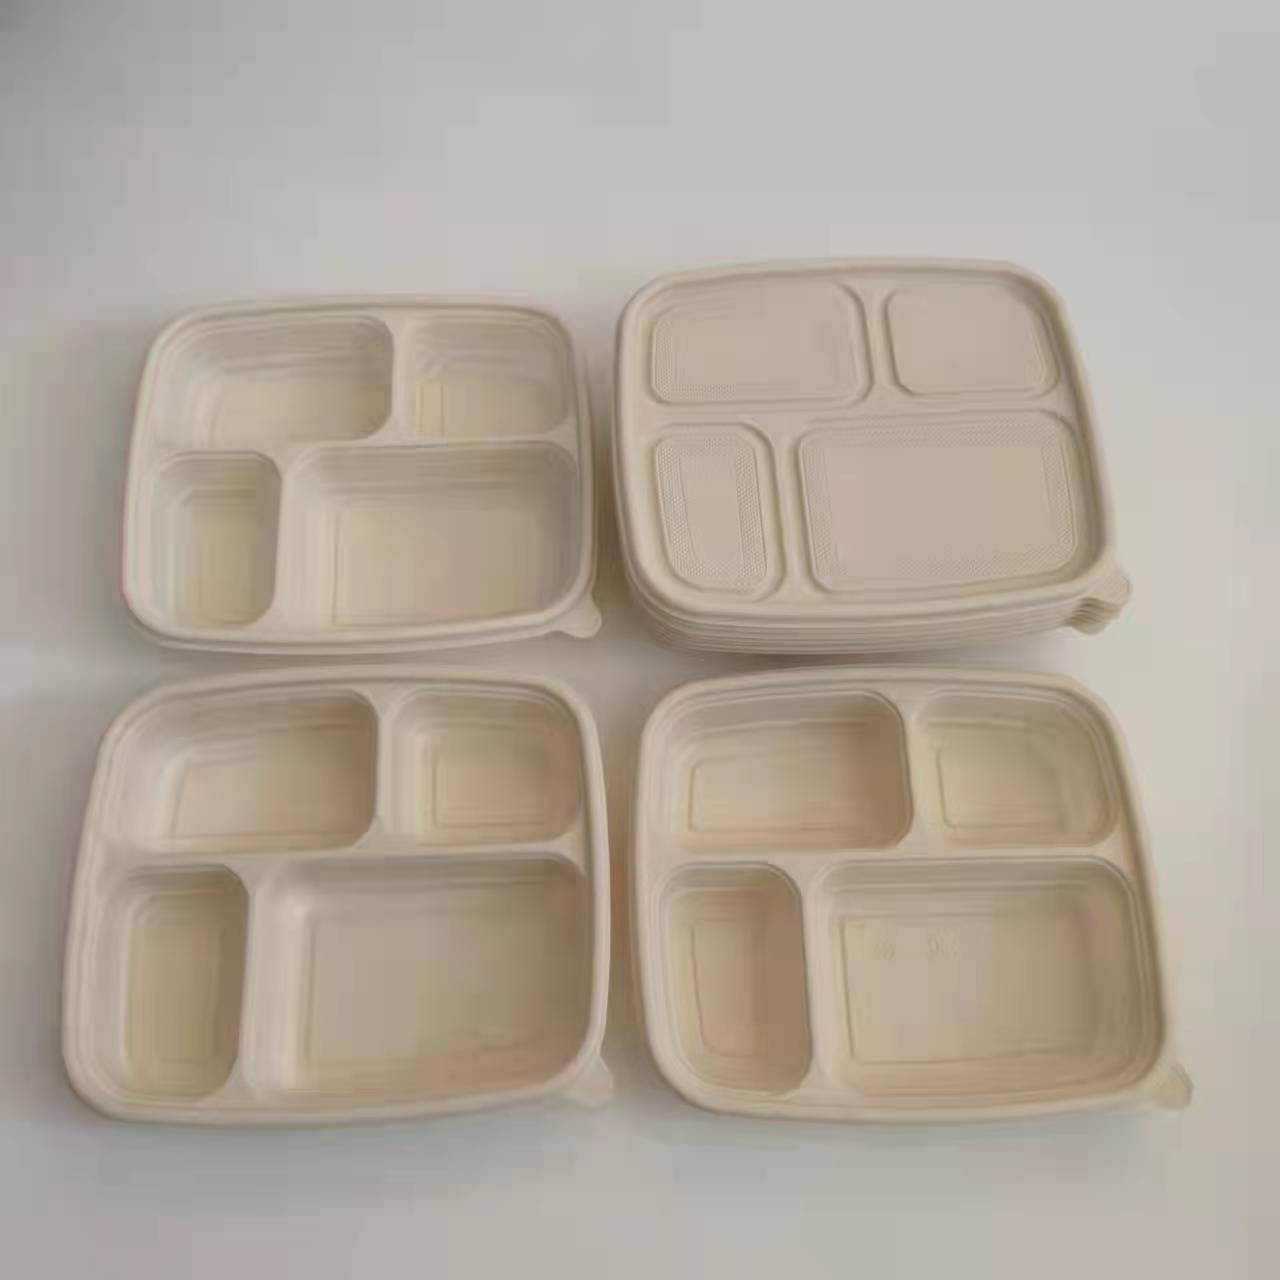 一次性餐具盒 玉米淀粉可降解便当盒 寿司沙拉打包盒长方性多格外卖盒